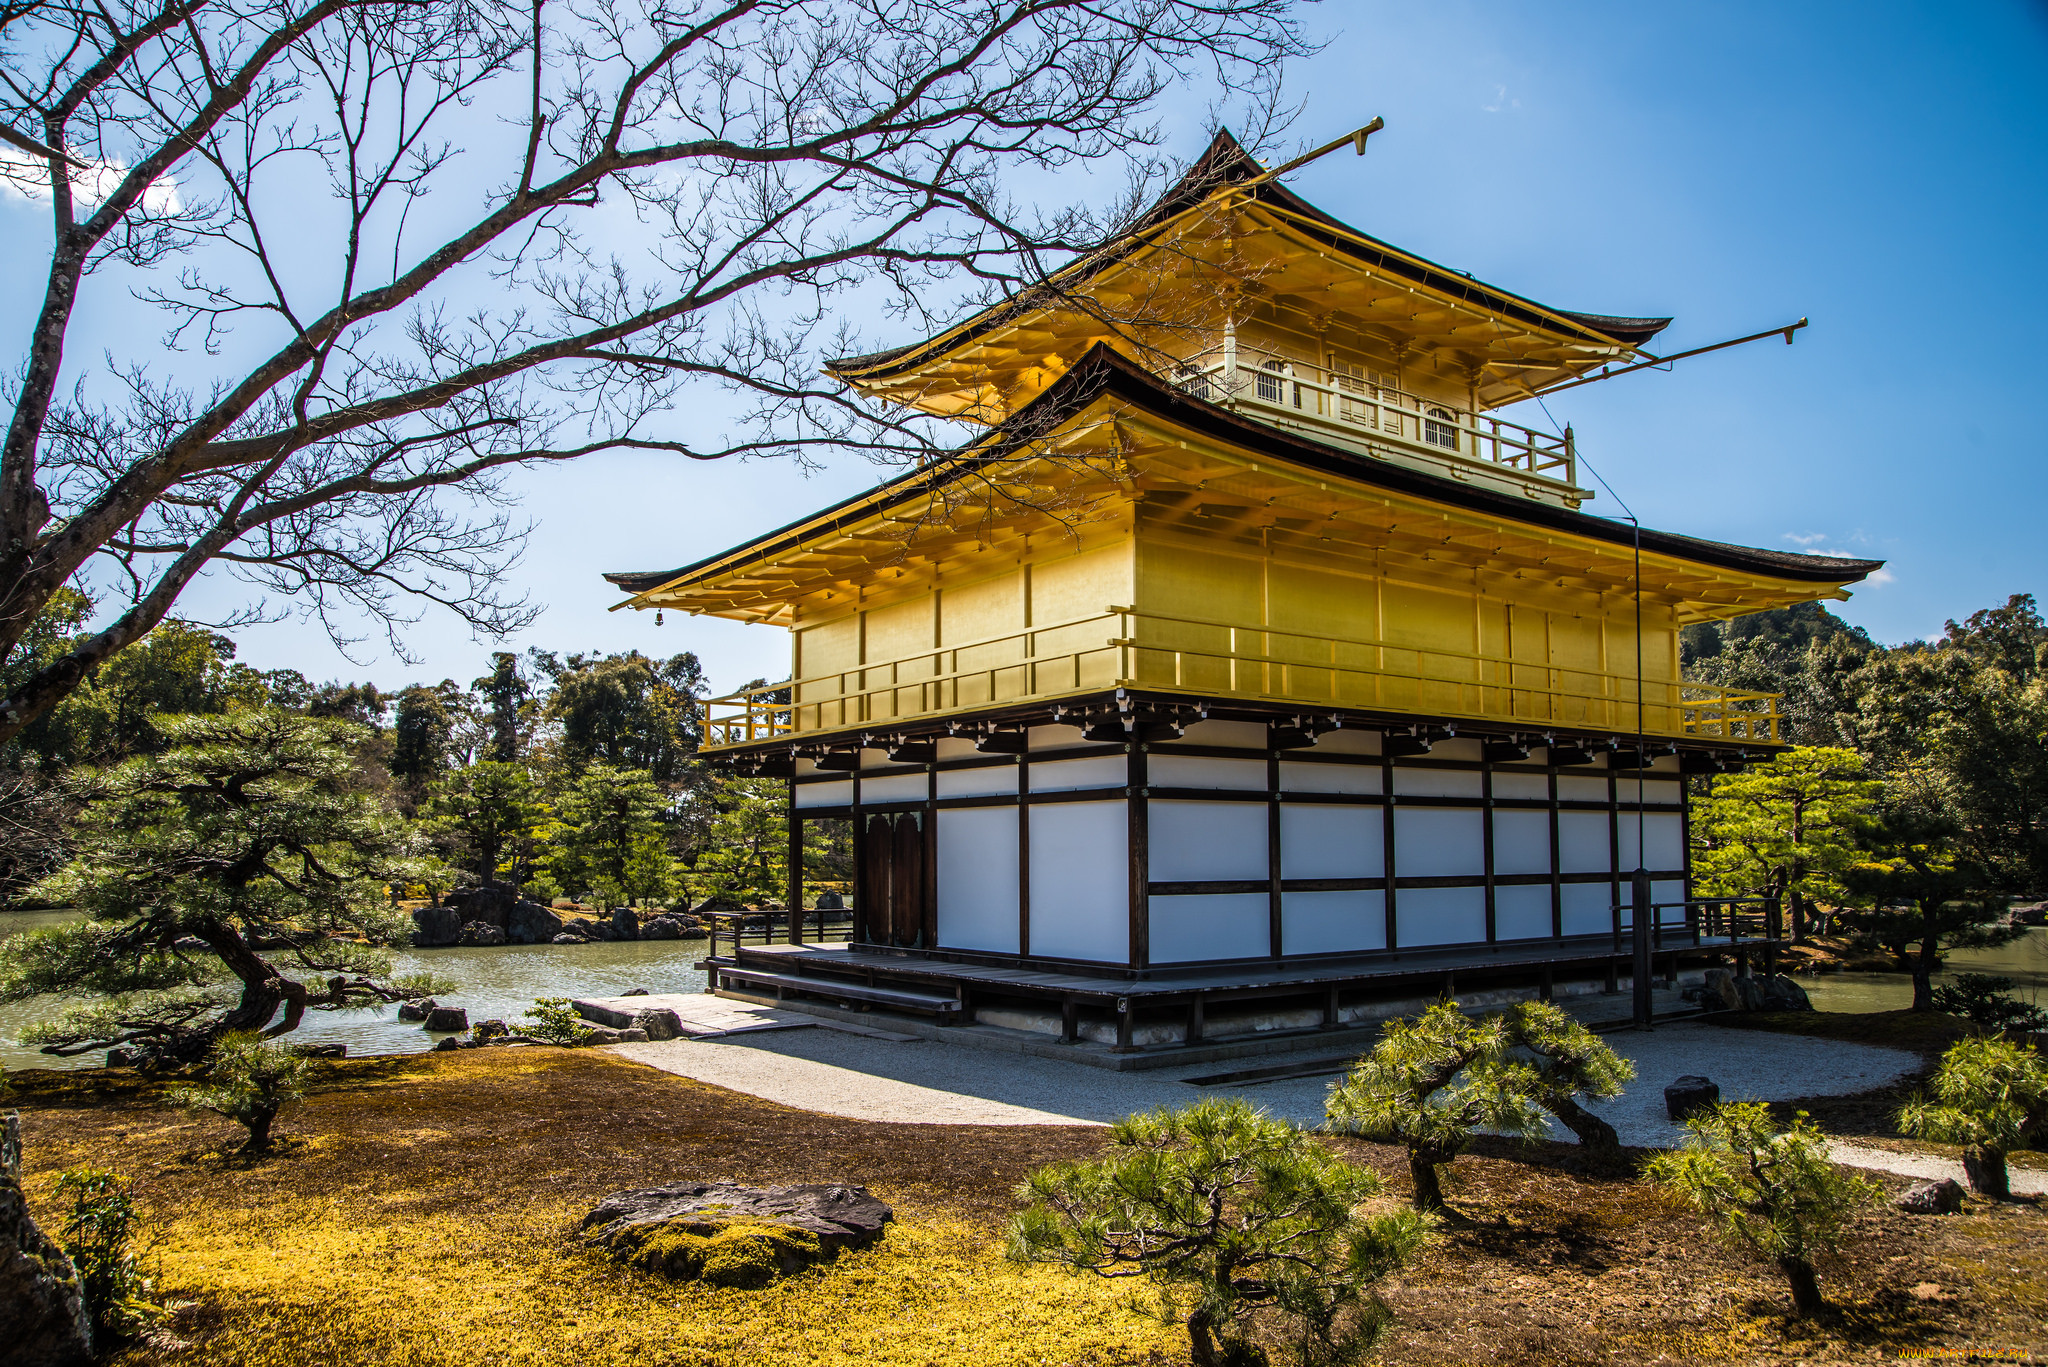 Китайские дома цена. Золотой павильон (Кинкаку-дзи). Минка Япония. Япония храм Кинкакудзи (золотой павильон) внутри. Матия архитектура Киото.